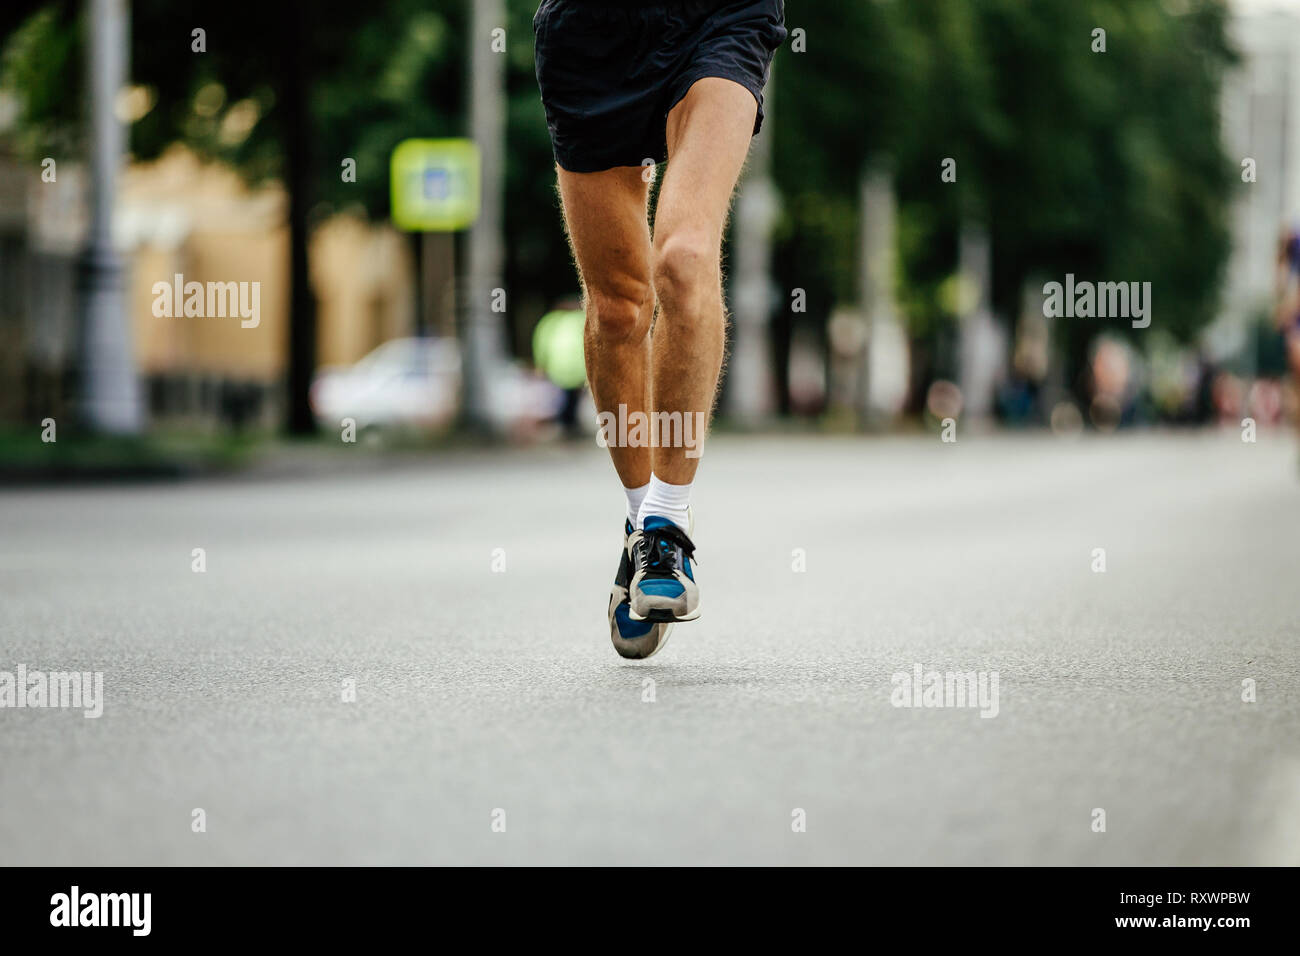 Beine Laufer Manner Laufen Strasse Marathon Stockfotografie Alamy